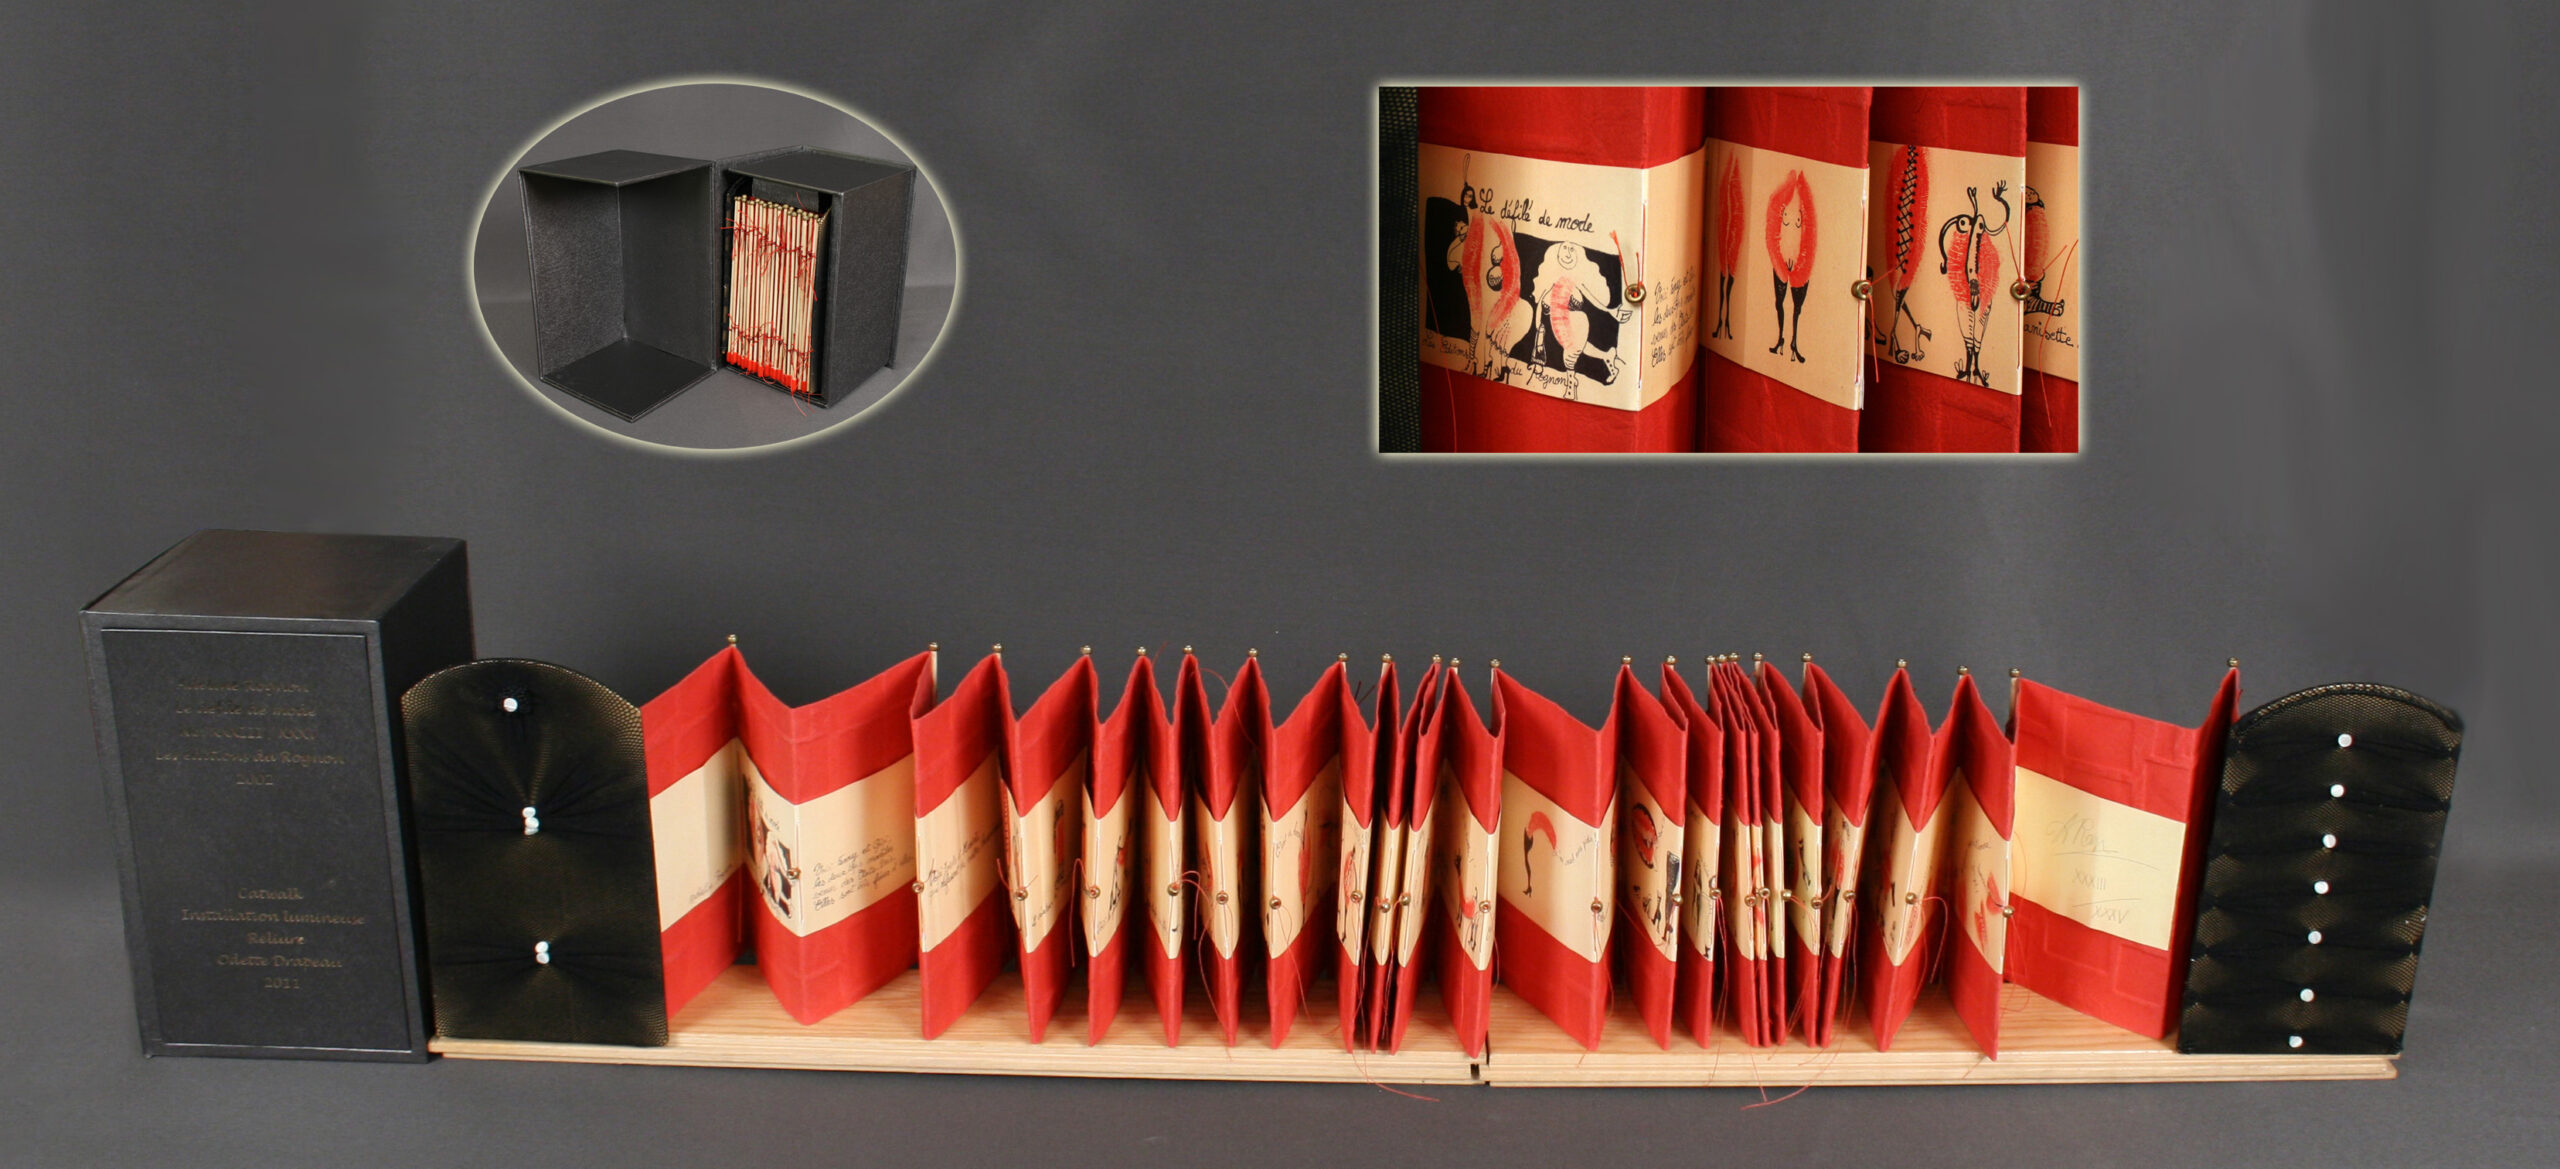 Reliure interactive et lumineuse Le livre accordéon est cousu, centré sur papier Saint-Armand rouge. Ceci permet d’en faire la lecture assistée par des diodes électroluminescentes (leds). Des capteurs reconnaissent le passage du lecteur et les pages s’éclairent au fur et à mesure qu‘il s’approche du livre. Un écrin sera porteur des crédits du livre. Reliure en recyclage de bas résille noir et bouton de nacre. Installation réalisée en collaboration avec Jean-Pierre Guité, maître en circuit électrique de toutes générations. Reliure réalisée en 2011 Adeline Rognon LE DÉFILÉ DE MODE Les éditions du Rognon, 2002 Exemplaire no. XXXIII/XXXV Installation « CATWALK »